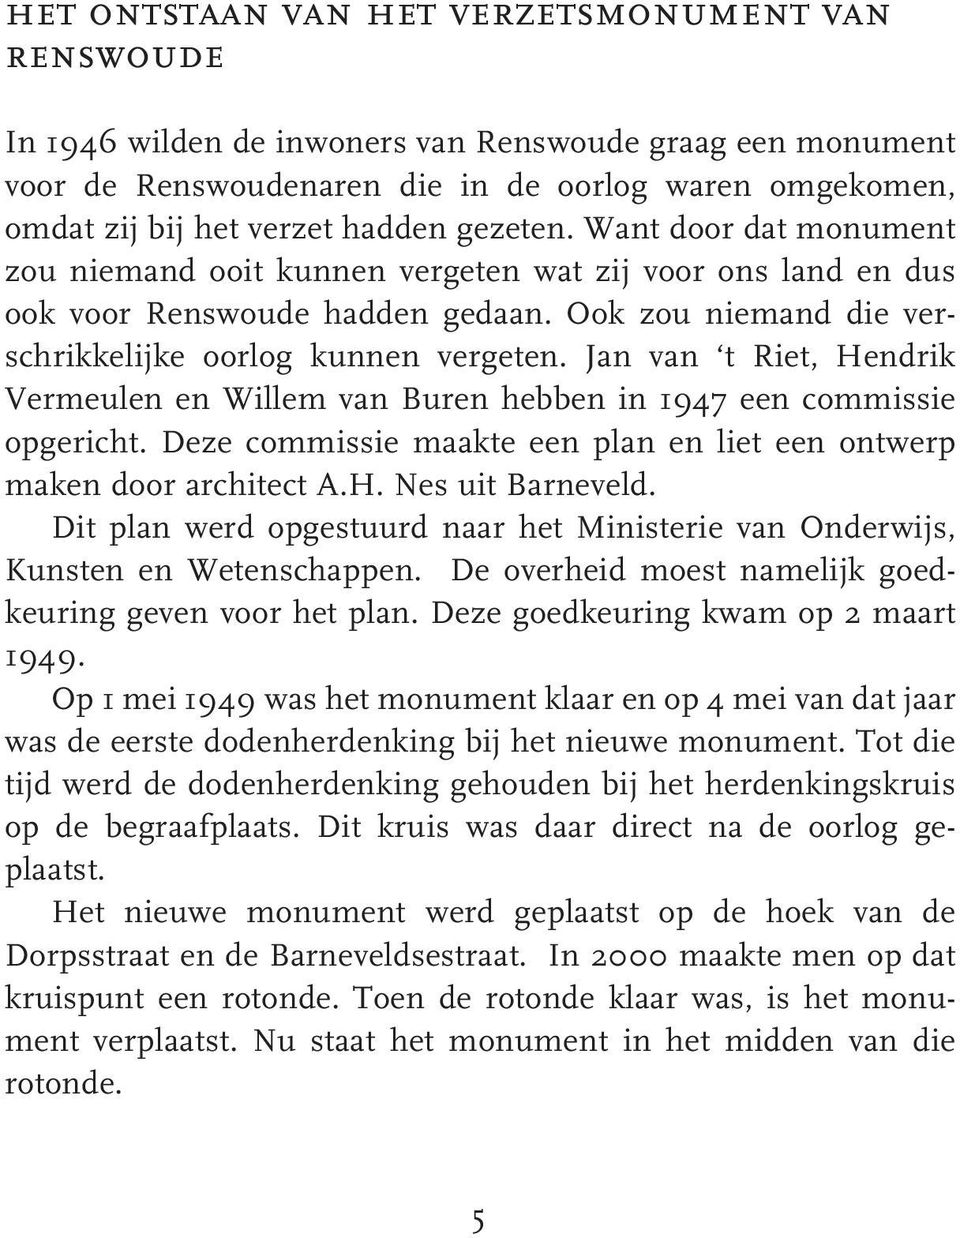 Jan van t Riet, Hendrik Vermeulen en Willem van Buren hebben in 1947 een commissie opgericht. Deze commissie maakte een plan en liet een ontwerp maken door architect A.H. Nes uit Barneveld.